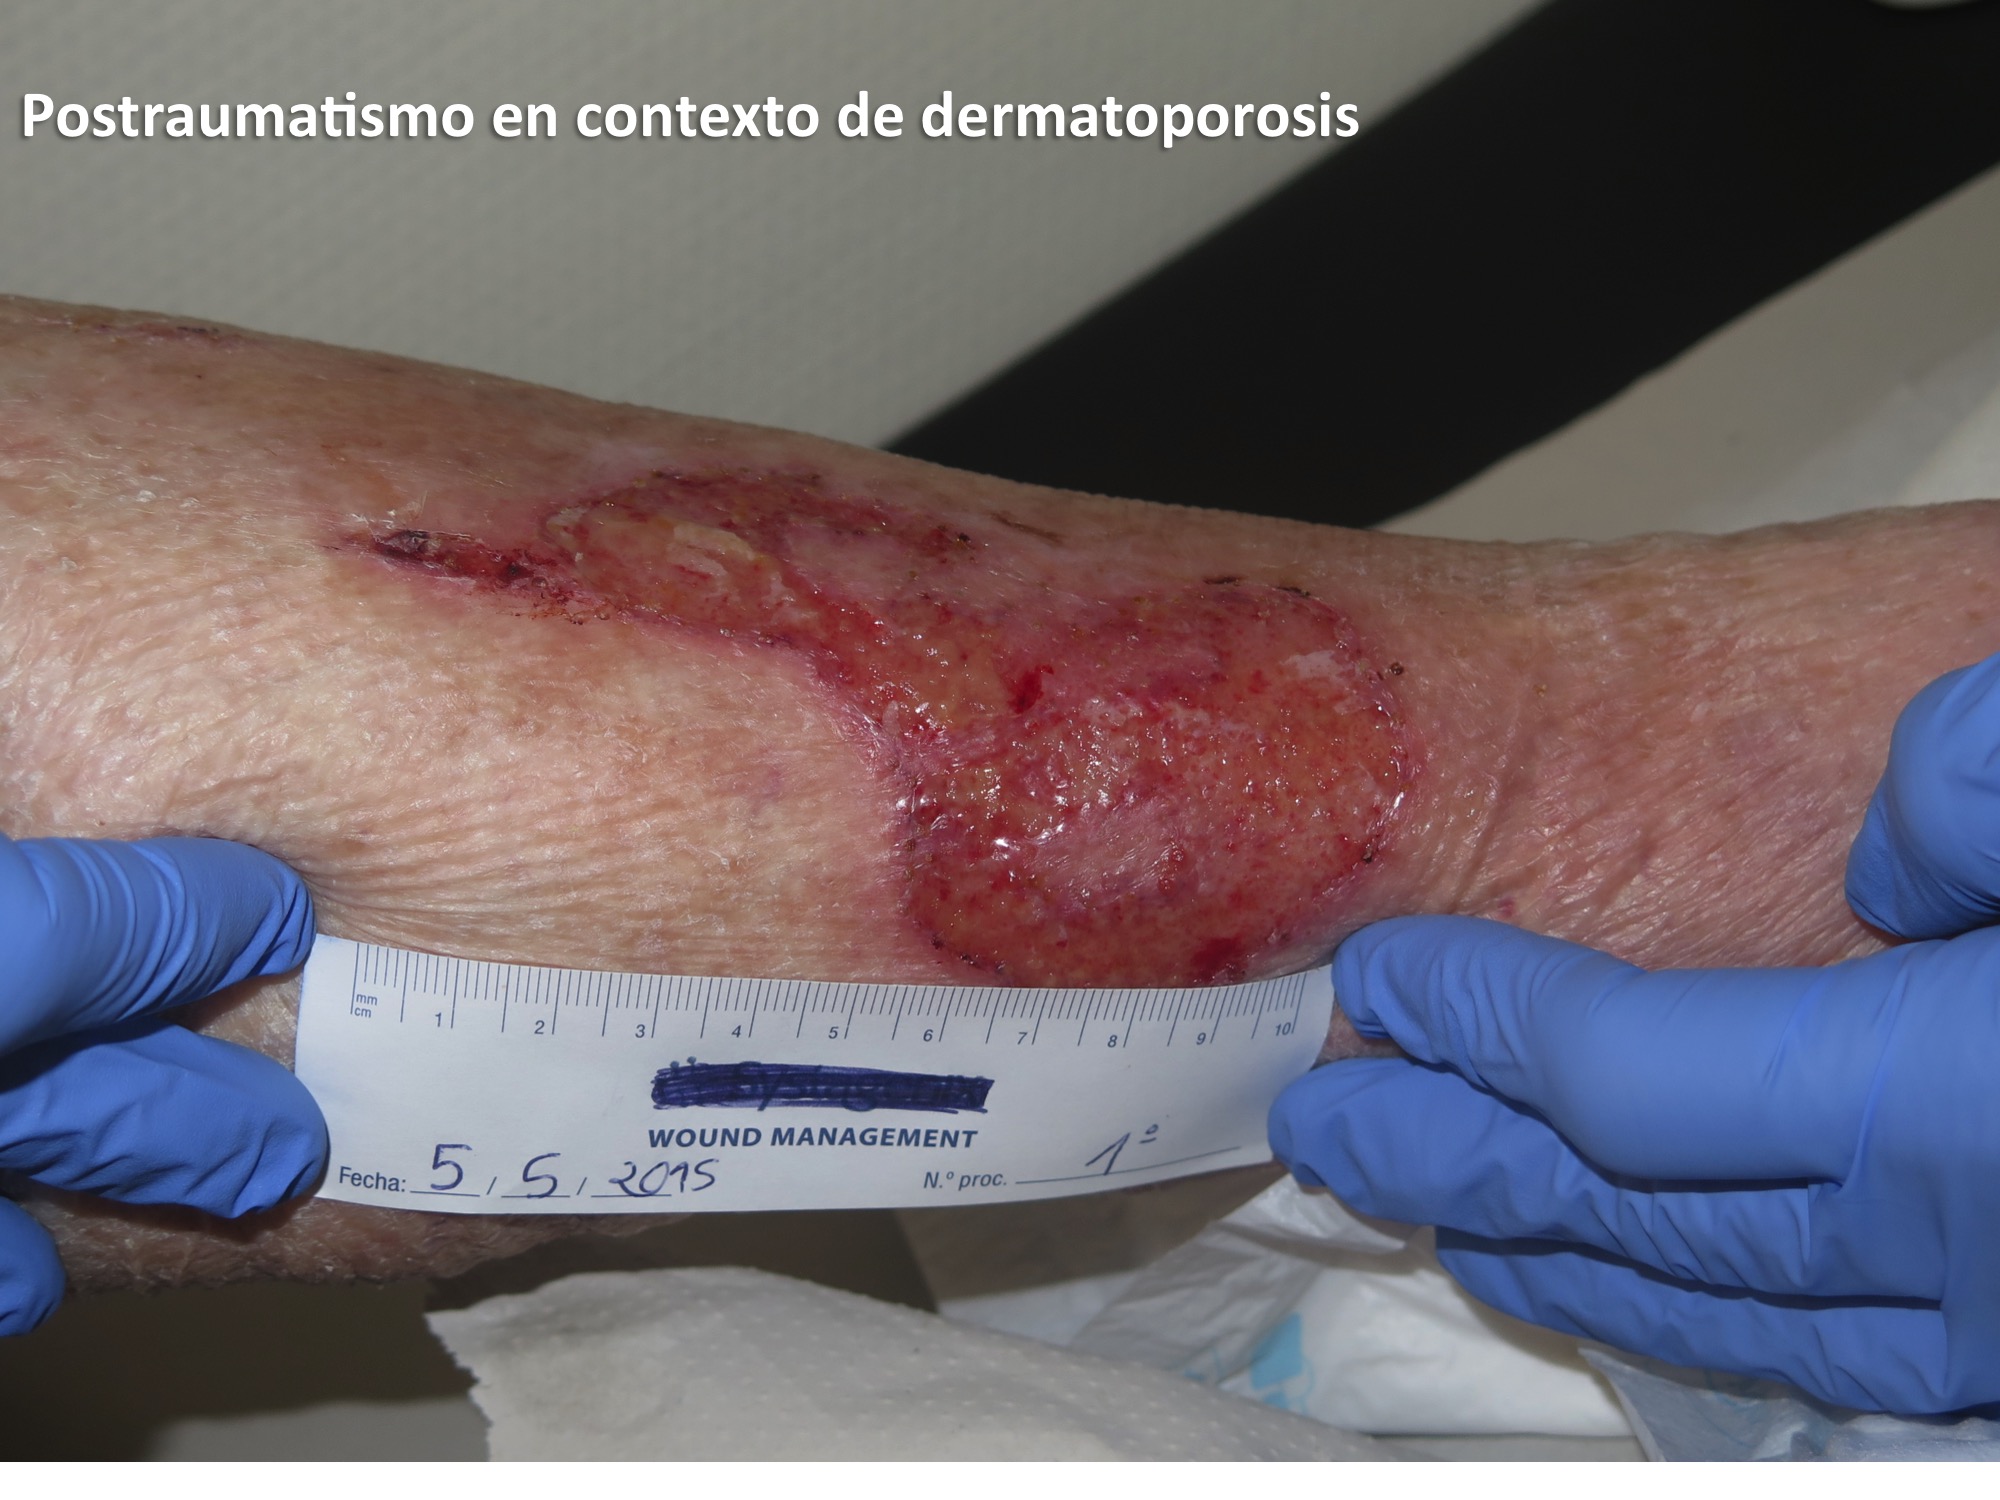 Postraumatismo en contexto de dermatoporosis